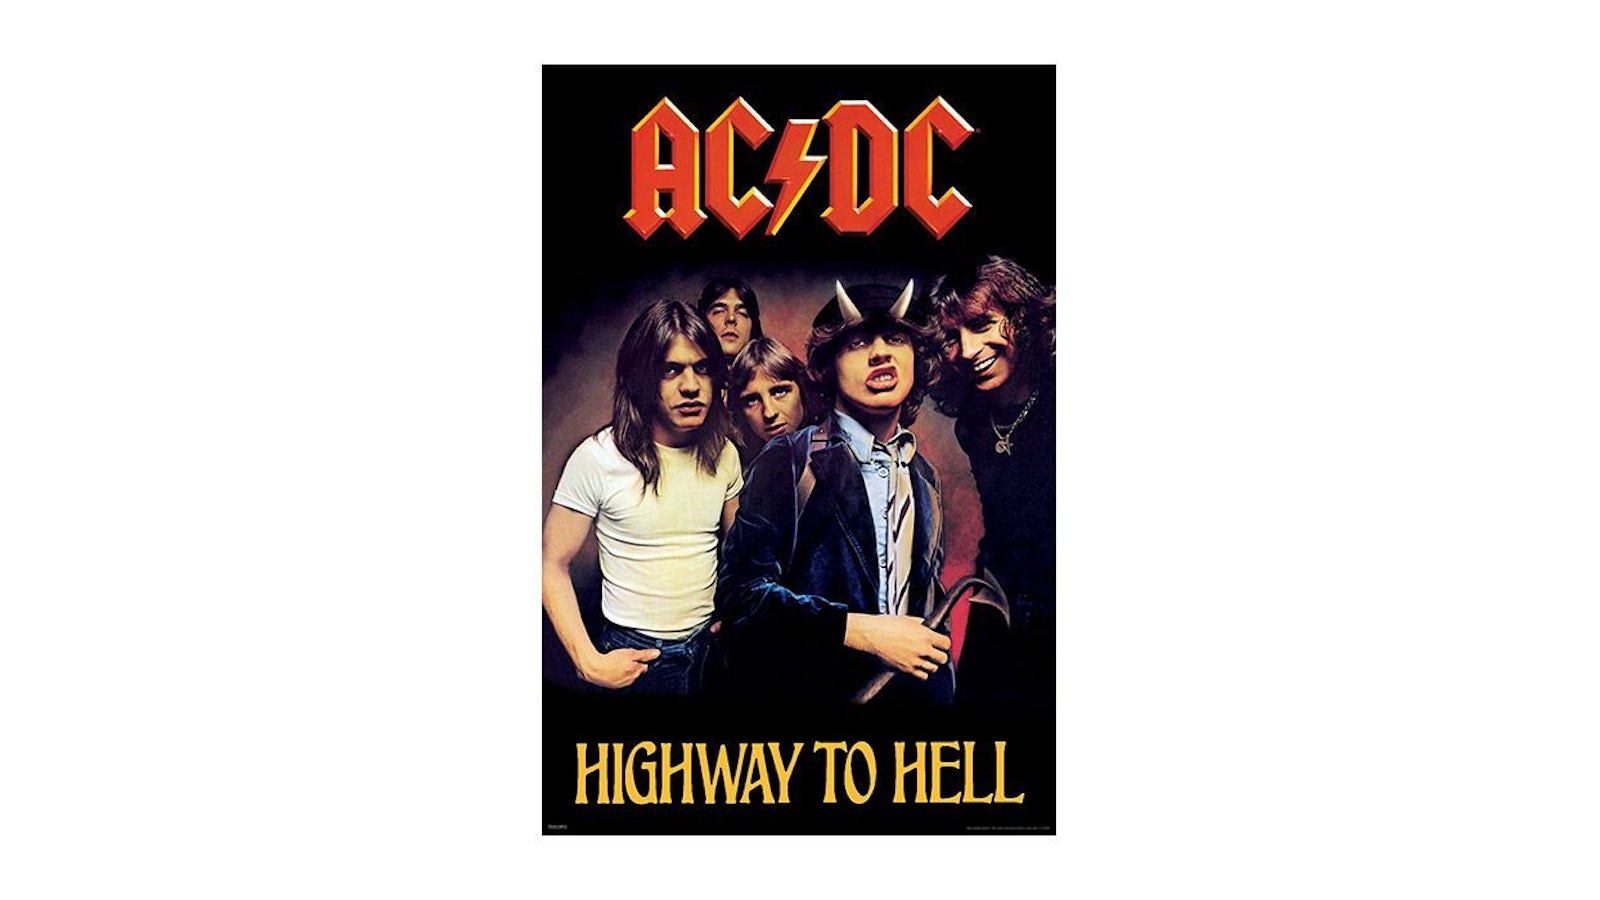 Acdc highway to hell. AC DC Highway to Hell 1979. AC DC Постер. AC DC Highway to Hell обложка. Плакат AC DC Highway to Hell.